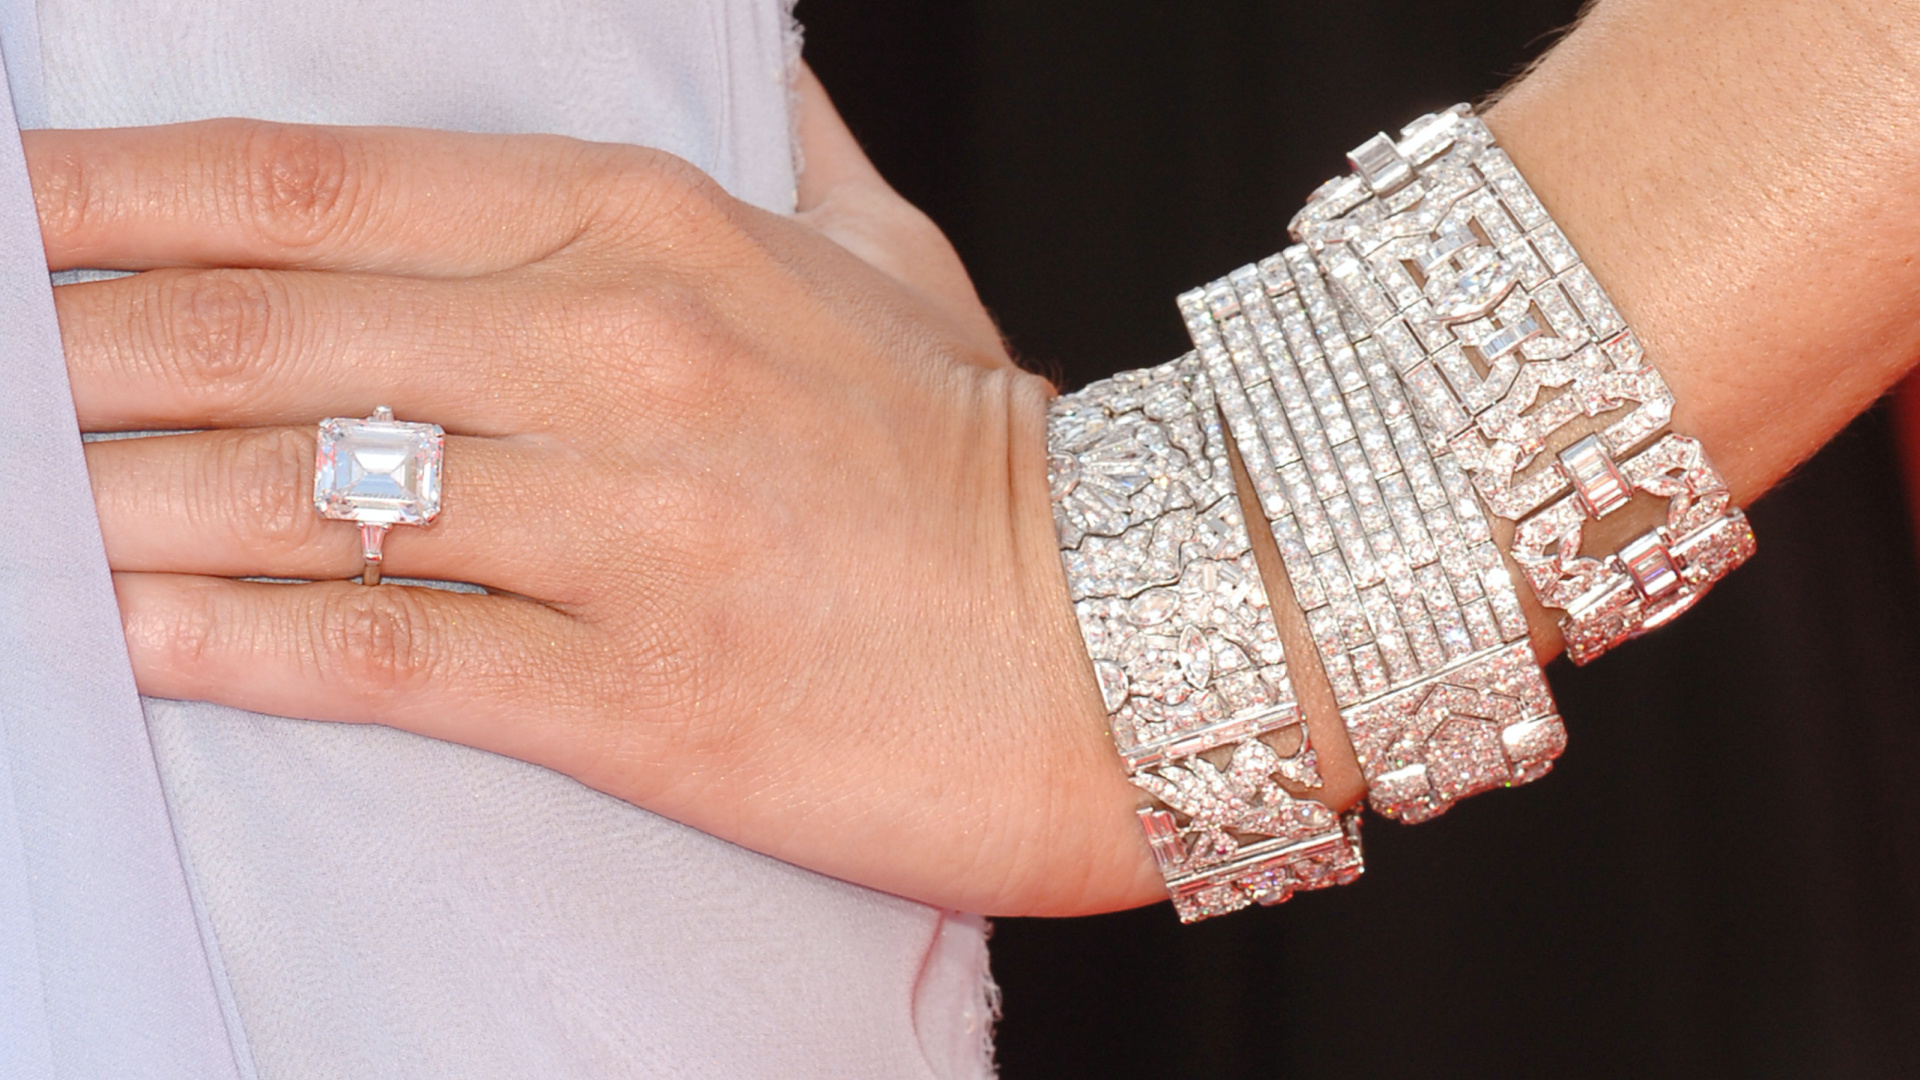 <p>Para su décimo aniversario, Melania Trump recibió una nueva joya 'de compromiso'. El nuevo anillo valía 3,5 millones de dólares y fue diseñado por los mismos joyeros. Cuenta con un diamante de 25 quilates mucho más grande, notablemente más grande que el anterior, pero es similar al anillo de compromiso original.</p>